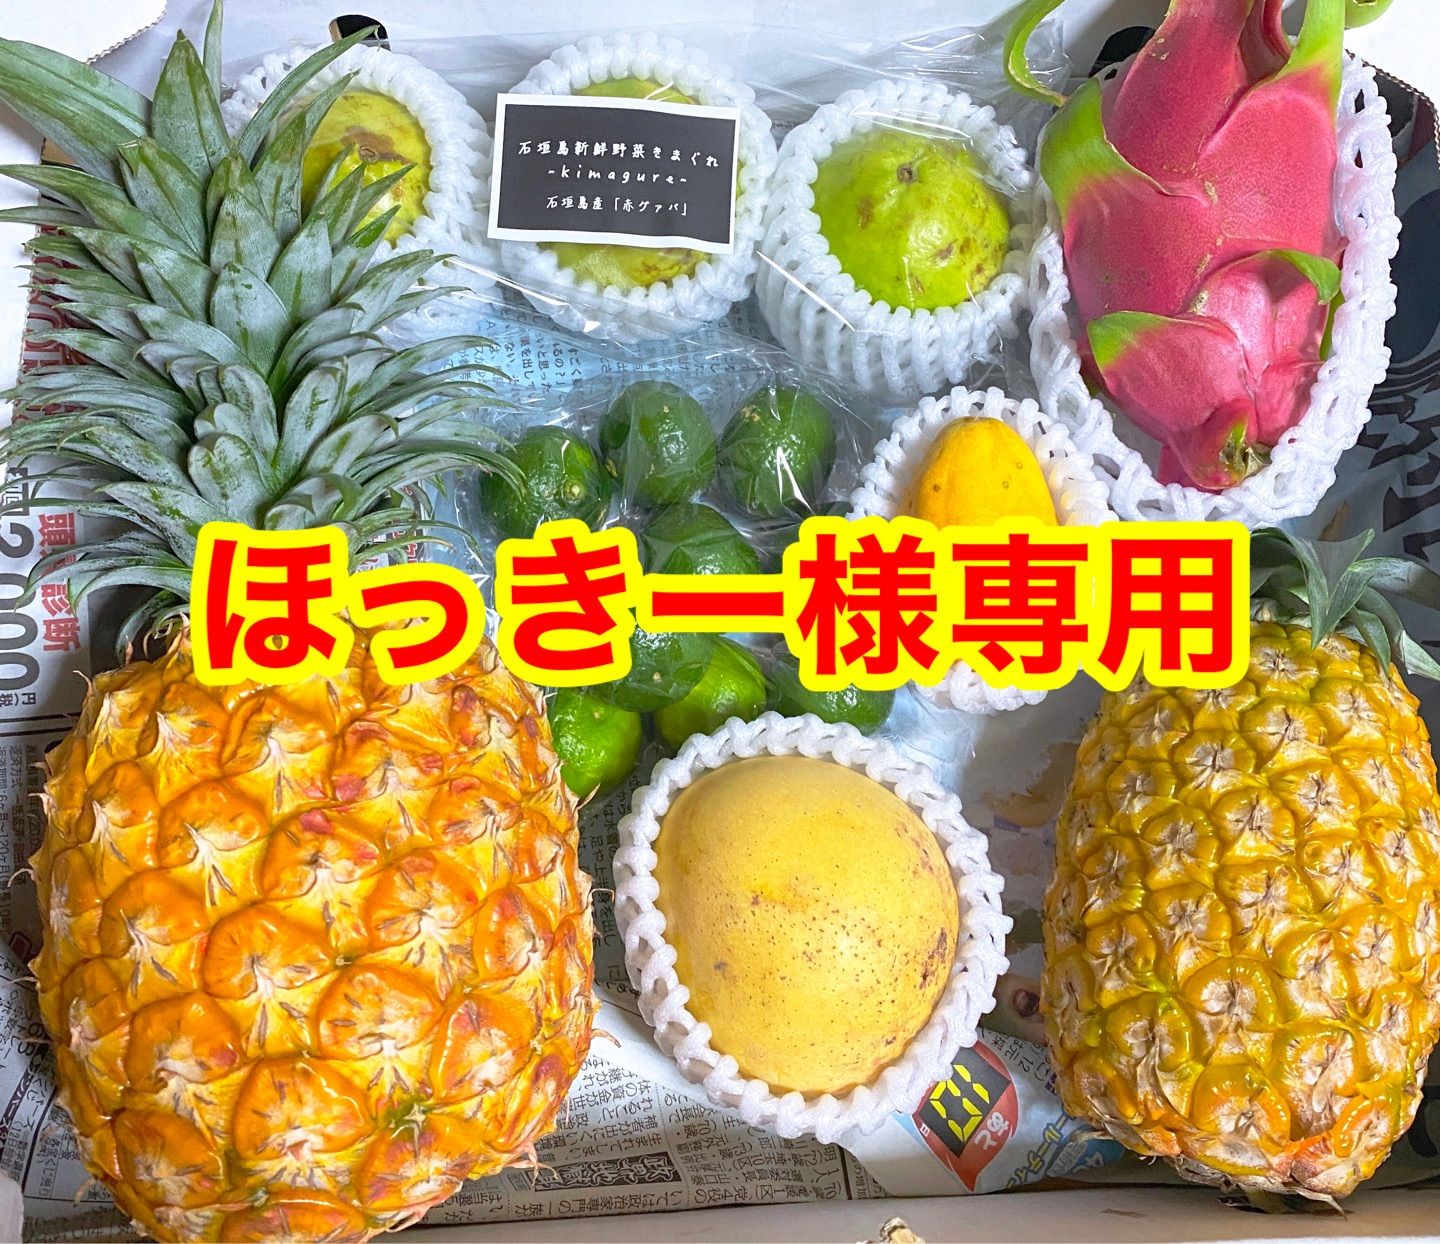 ほっきー様専用 - 石垣島新鮮野菜〜きまぐれ〜 - メルカリ